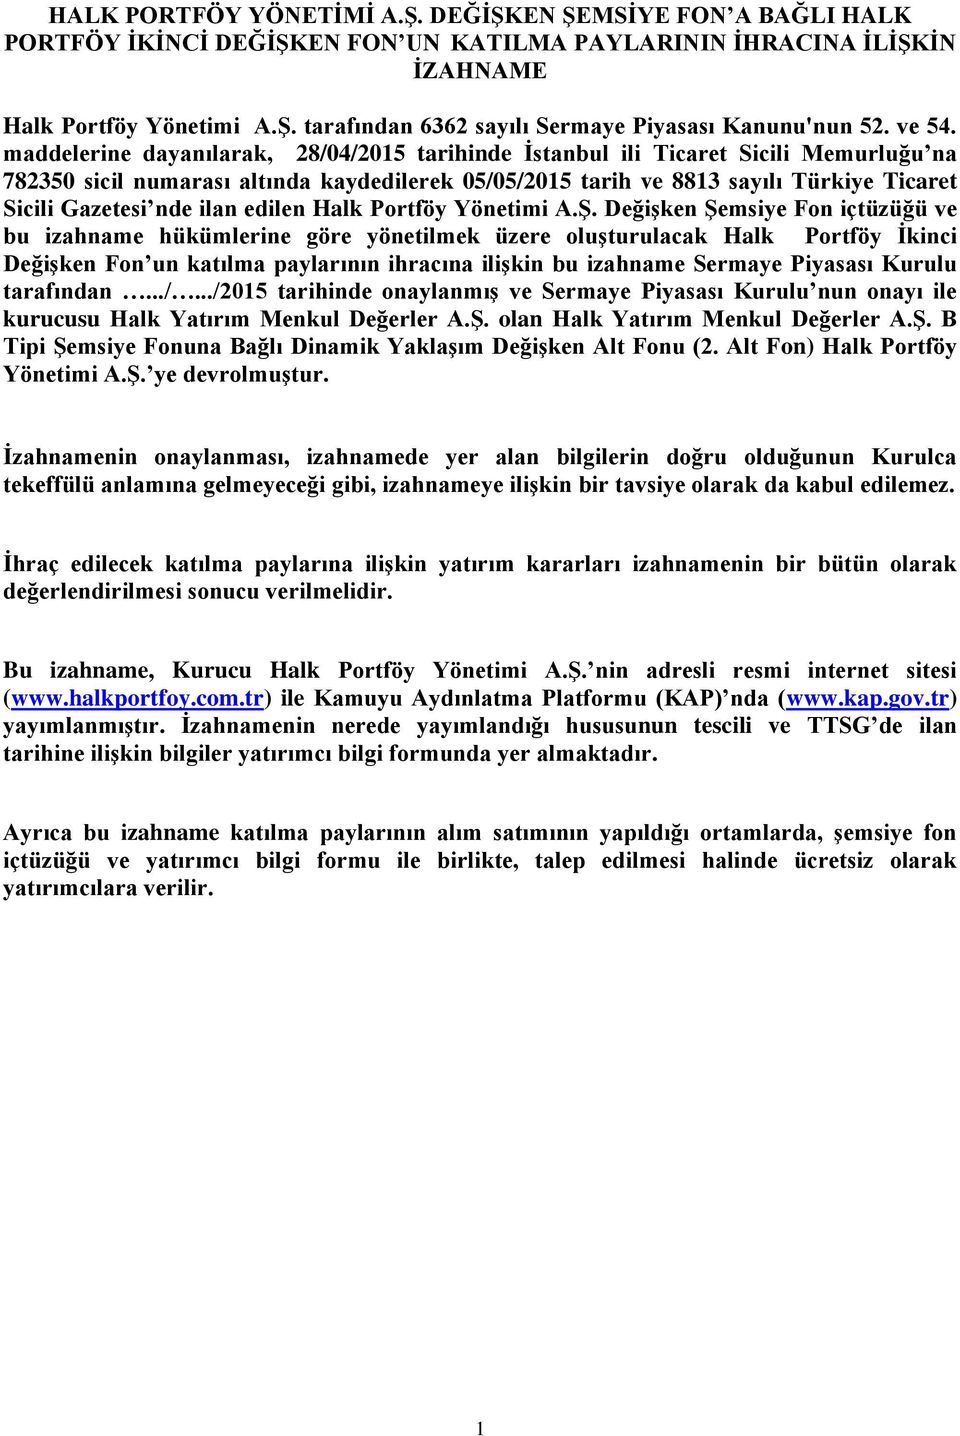 maddelerine dayanılarak, 28/04/2015 tarihinde İstanbul ili Ticaret Sicili Memurluğu na 782350 sicil numarası altında kaydedilerek 05/05/2015 tarih ve 8813 sayılı Türkiye Ticaret Sicili Gazetesi nde